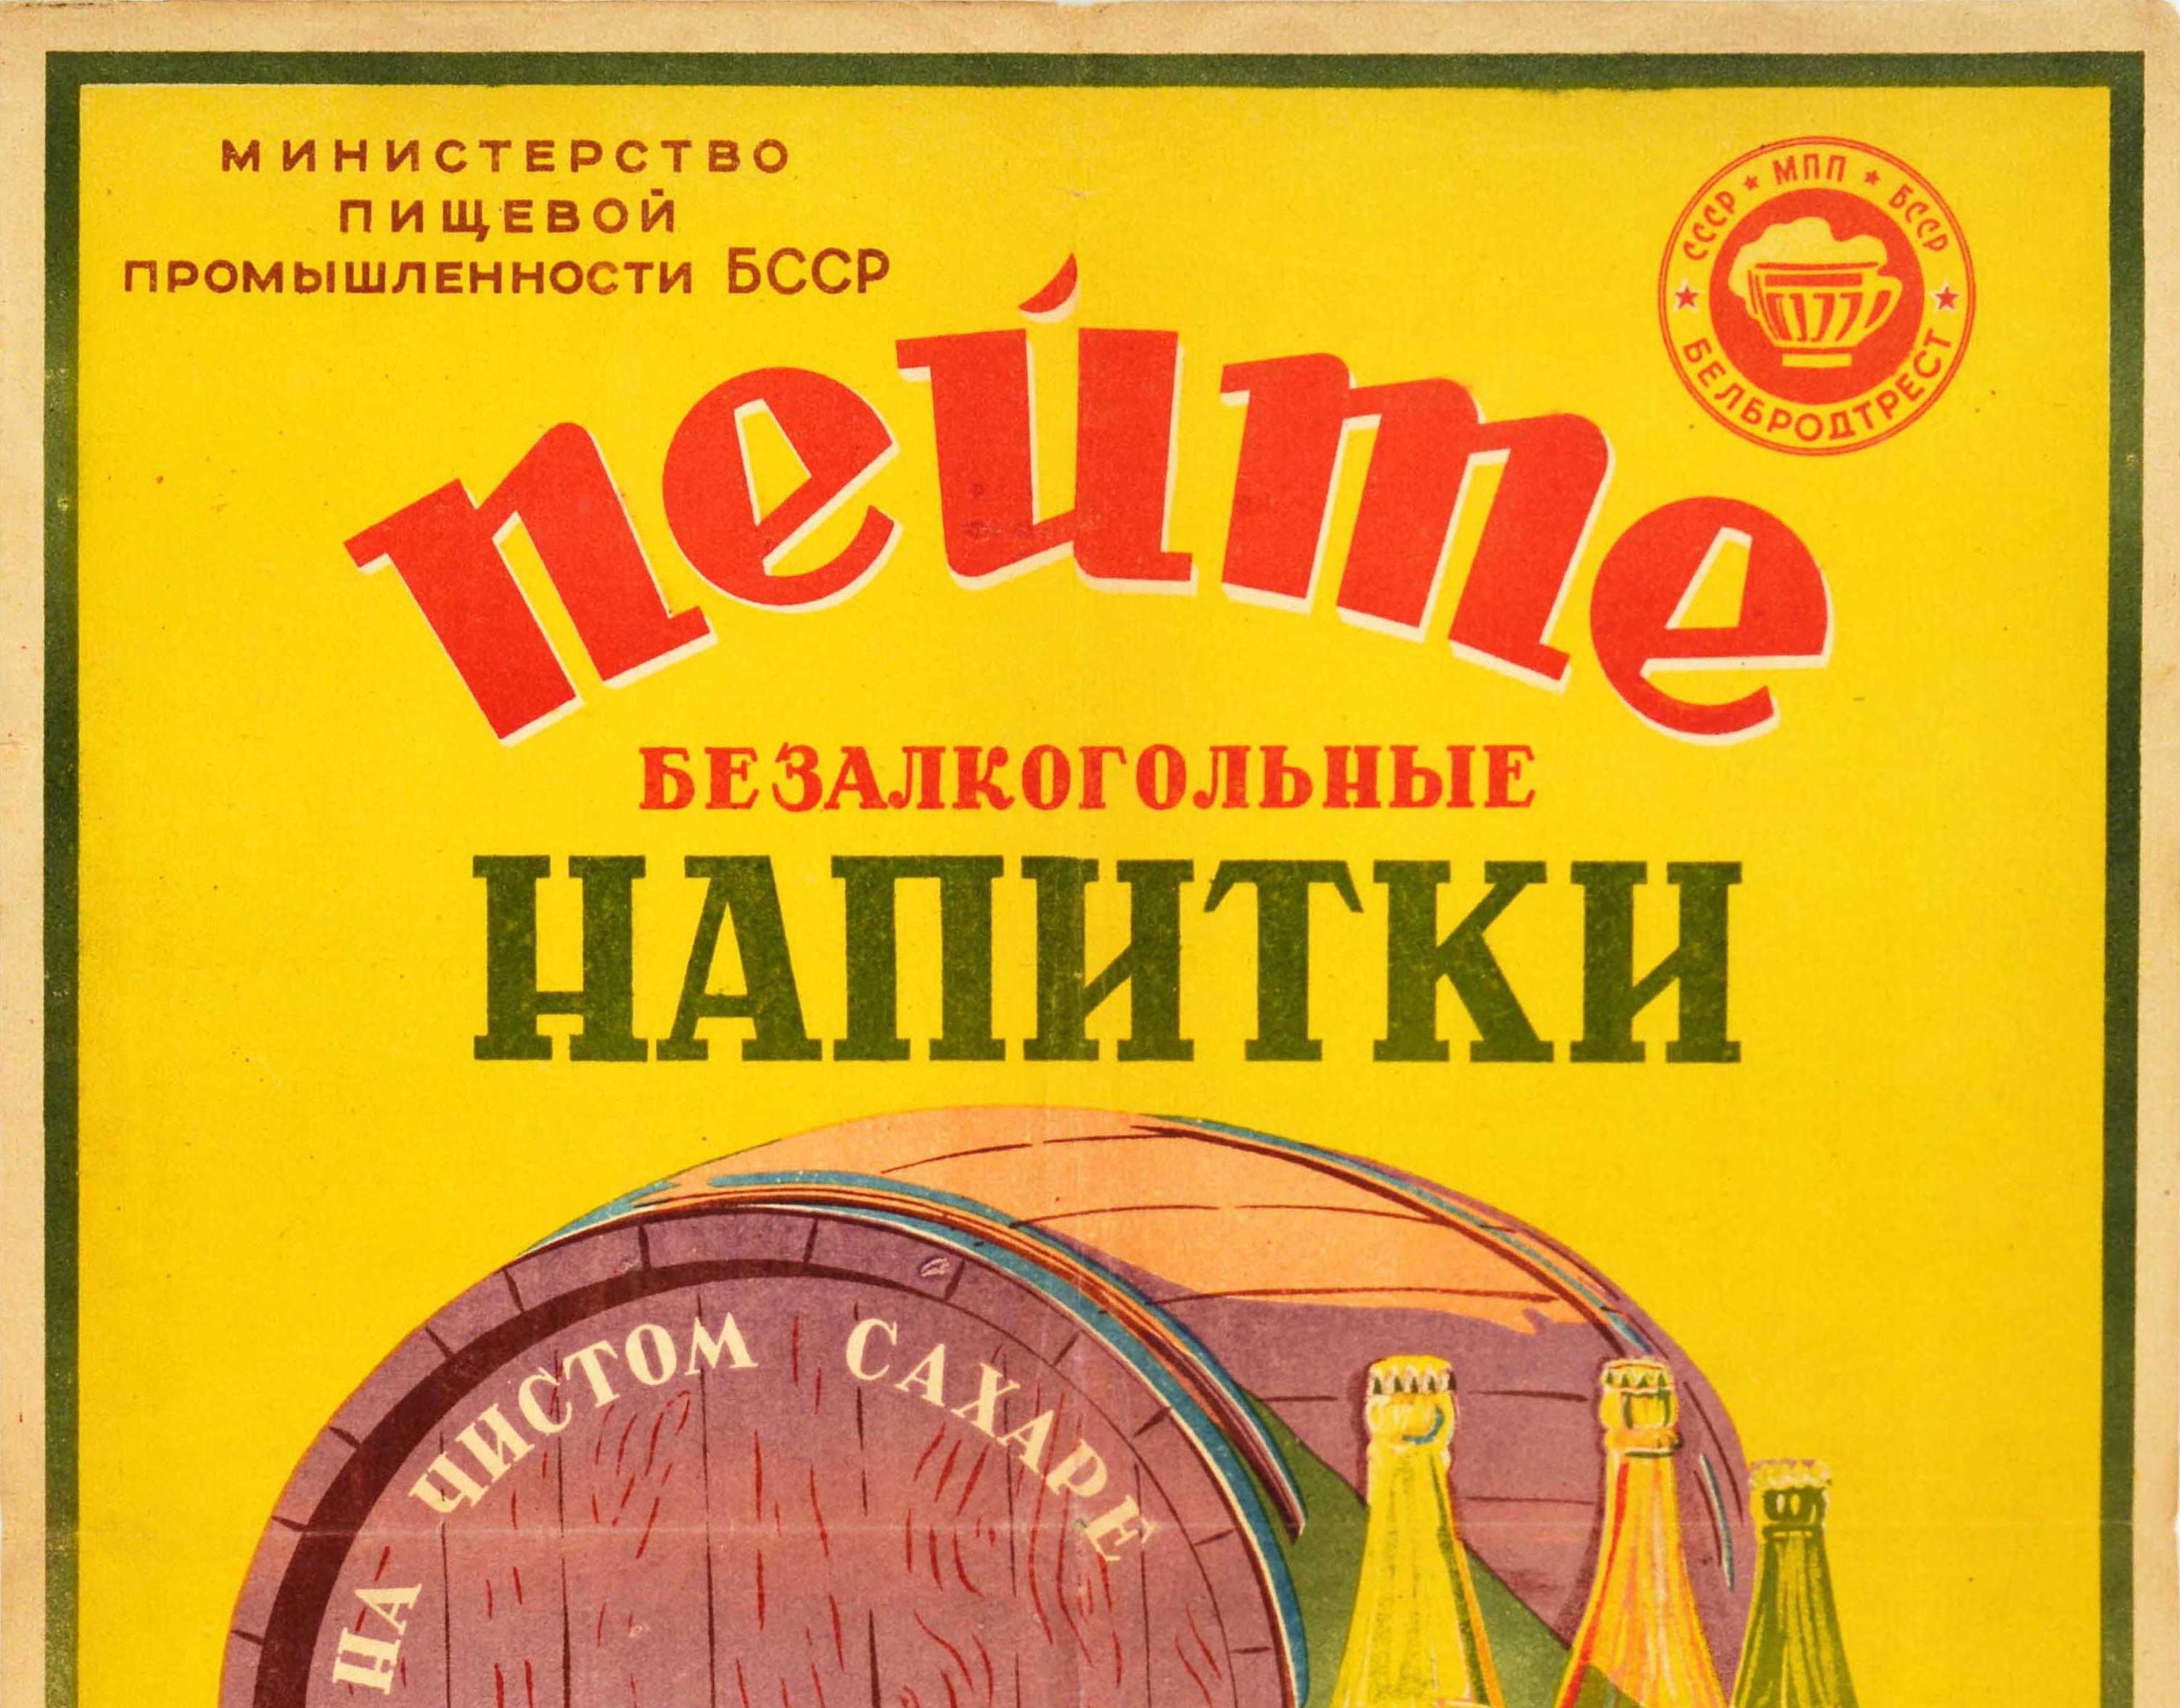 Affiche publicitaire originale d'époque - Boissons rafraîchissantes à base de sucre pur, de jus naturels et de teintures fabriquées par les usines Belbroadtrest - présentant l'image d'un tonneau en bois avec des raisins et des citrons à côté d'un